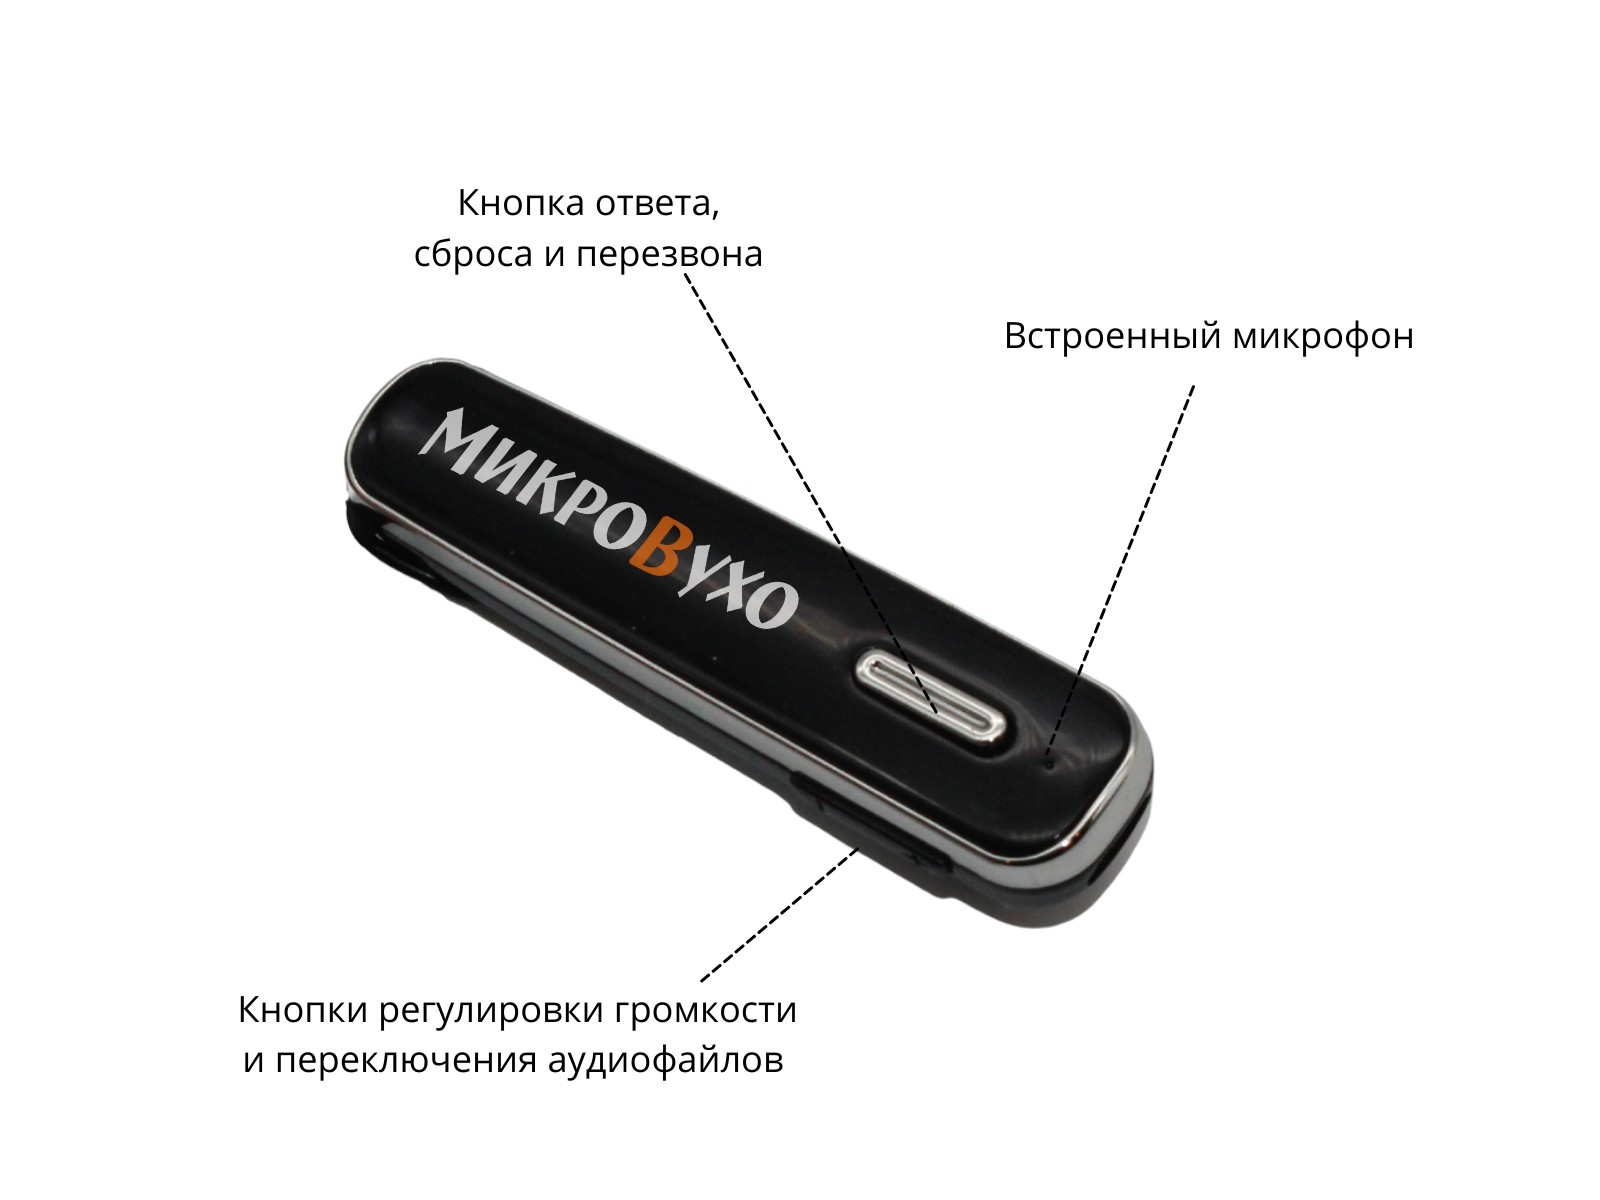 Гарнитура Bluetooth Box Premier Lite с капсульным микронаушником K5 4 мм - изображение 6